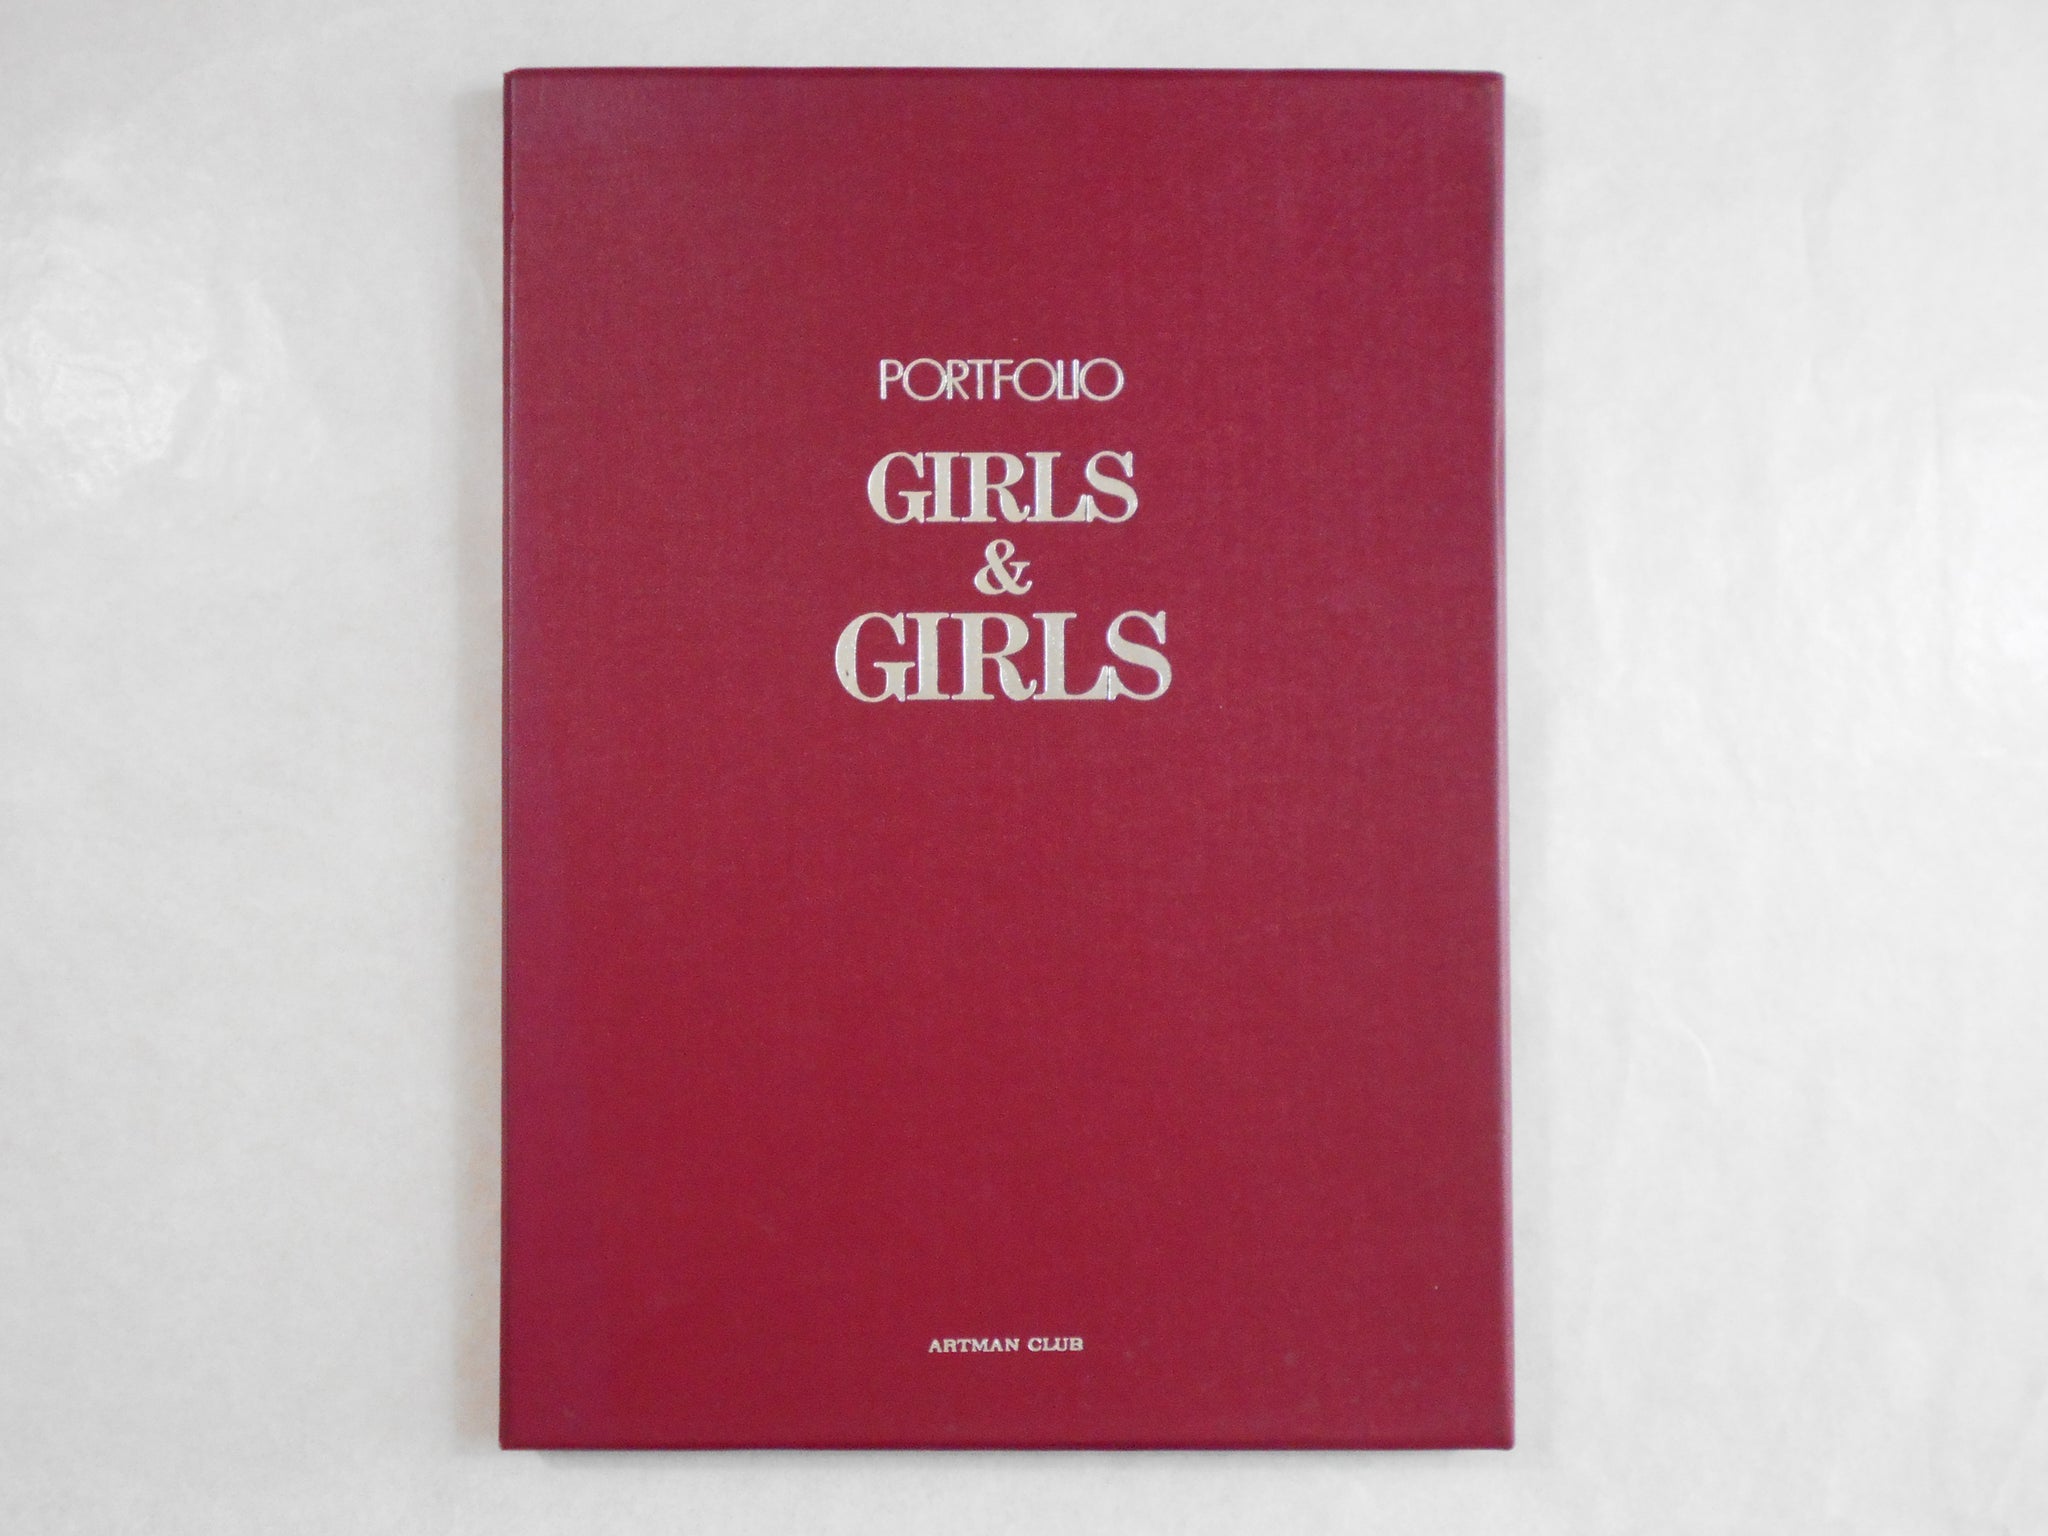 Portfolio Girls & Girls | AA.VV. | Artman Club 1993